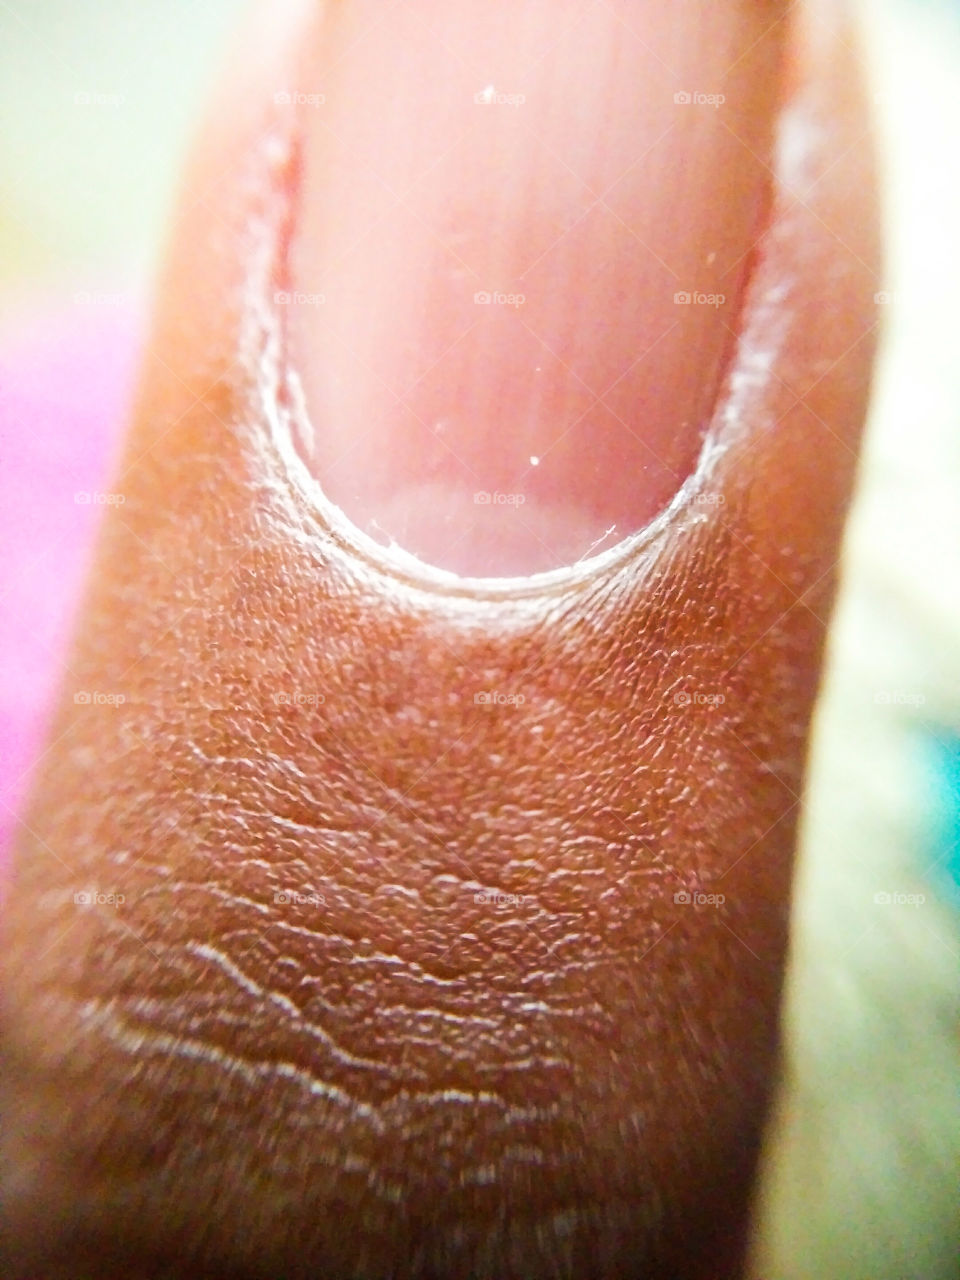 finger nail